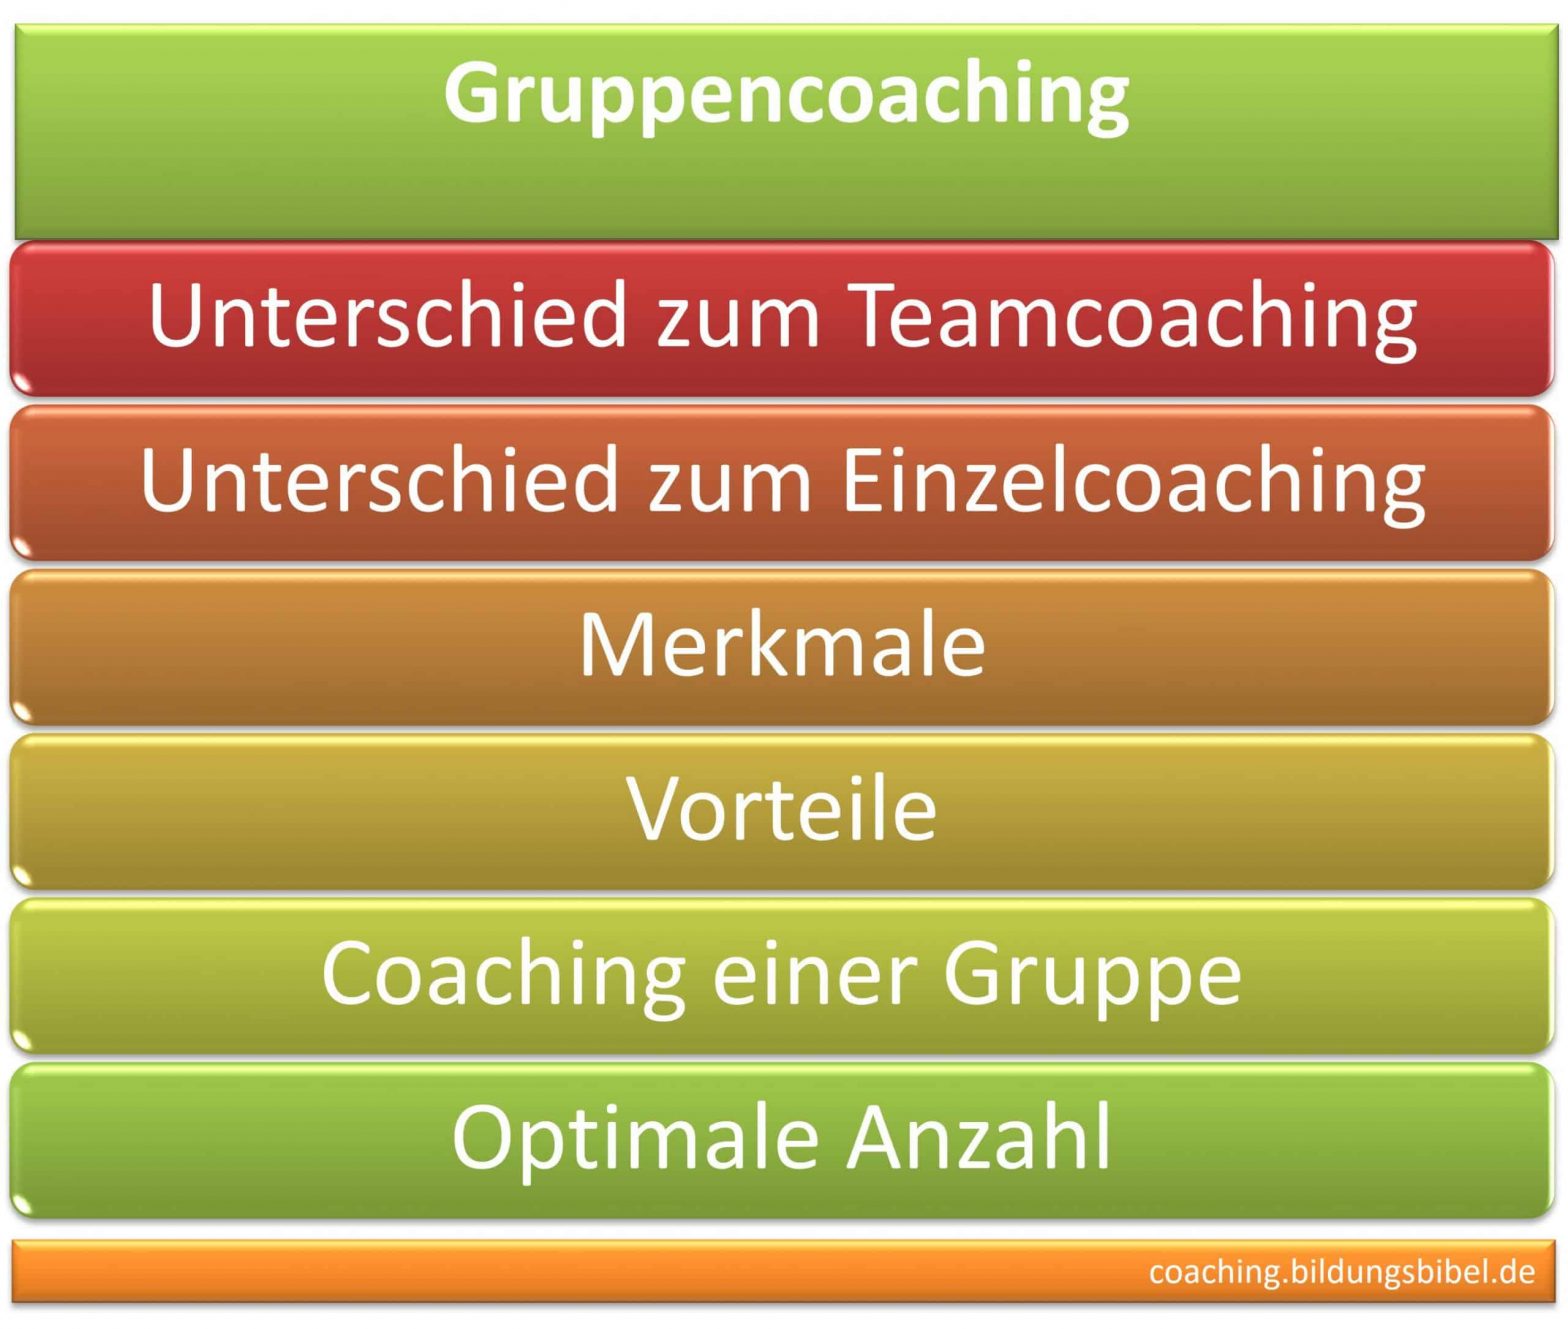 Gruppencoaching, Unterschied zum Teamcoaching sowie dem Einzelcoaching, Merkmale, Vorteile, Coaching einer Gruppe, optimale Anzahl.